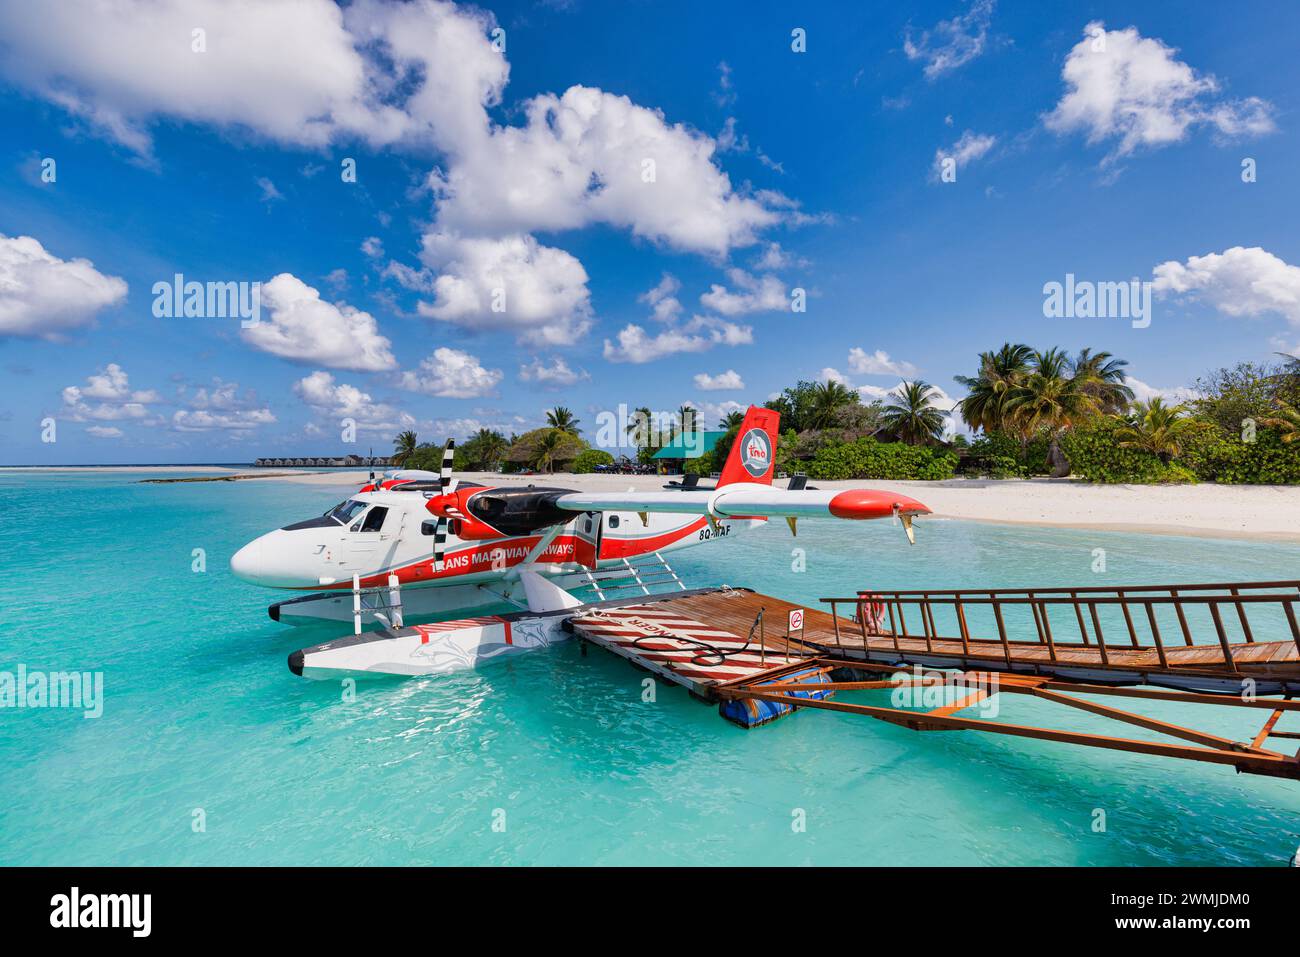 TransMaldivian Airways Twin Otter Wasserflugzeuge am Flughafen Male (MLE) auf den Malediven. Wasserflugzeug-Parkplatz neben dem Dock. 02.05.22, Ari-Atoll, Malediven Stockfoto